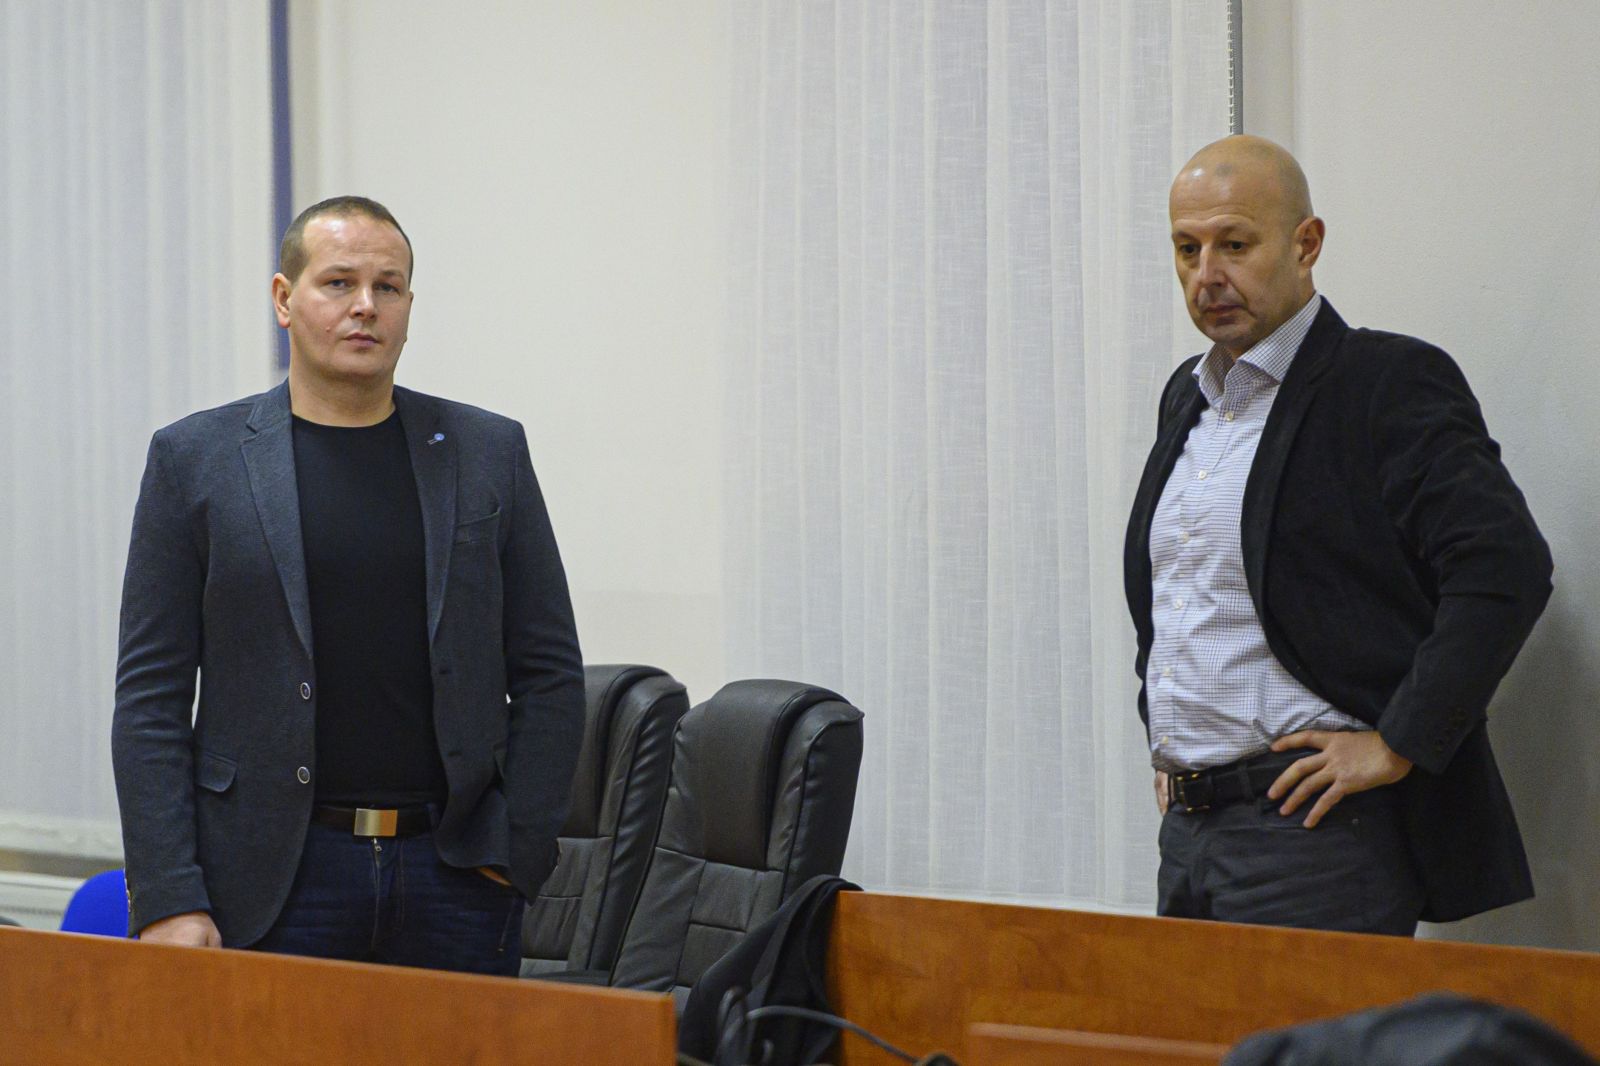 Na snímke svedkovia vpravo Miroslav Kriak a vľavo Štefan Mlynarčík, ktorí vykonávali sledovanie novinárov vrátane Jána Kuciaka.